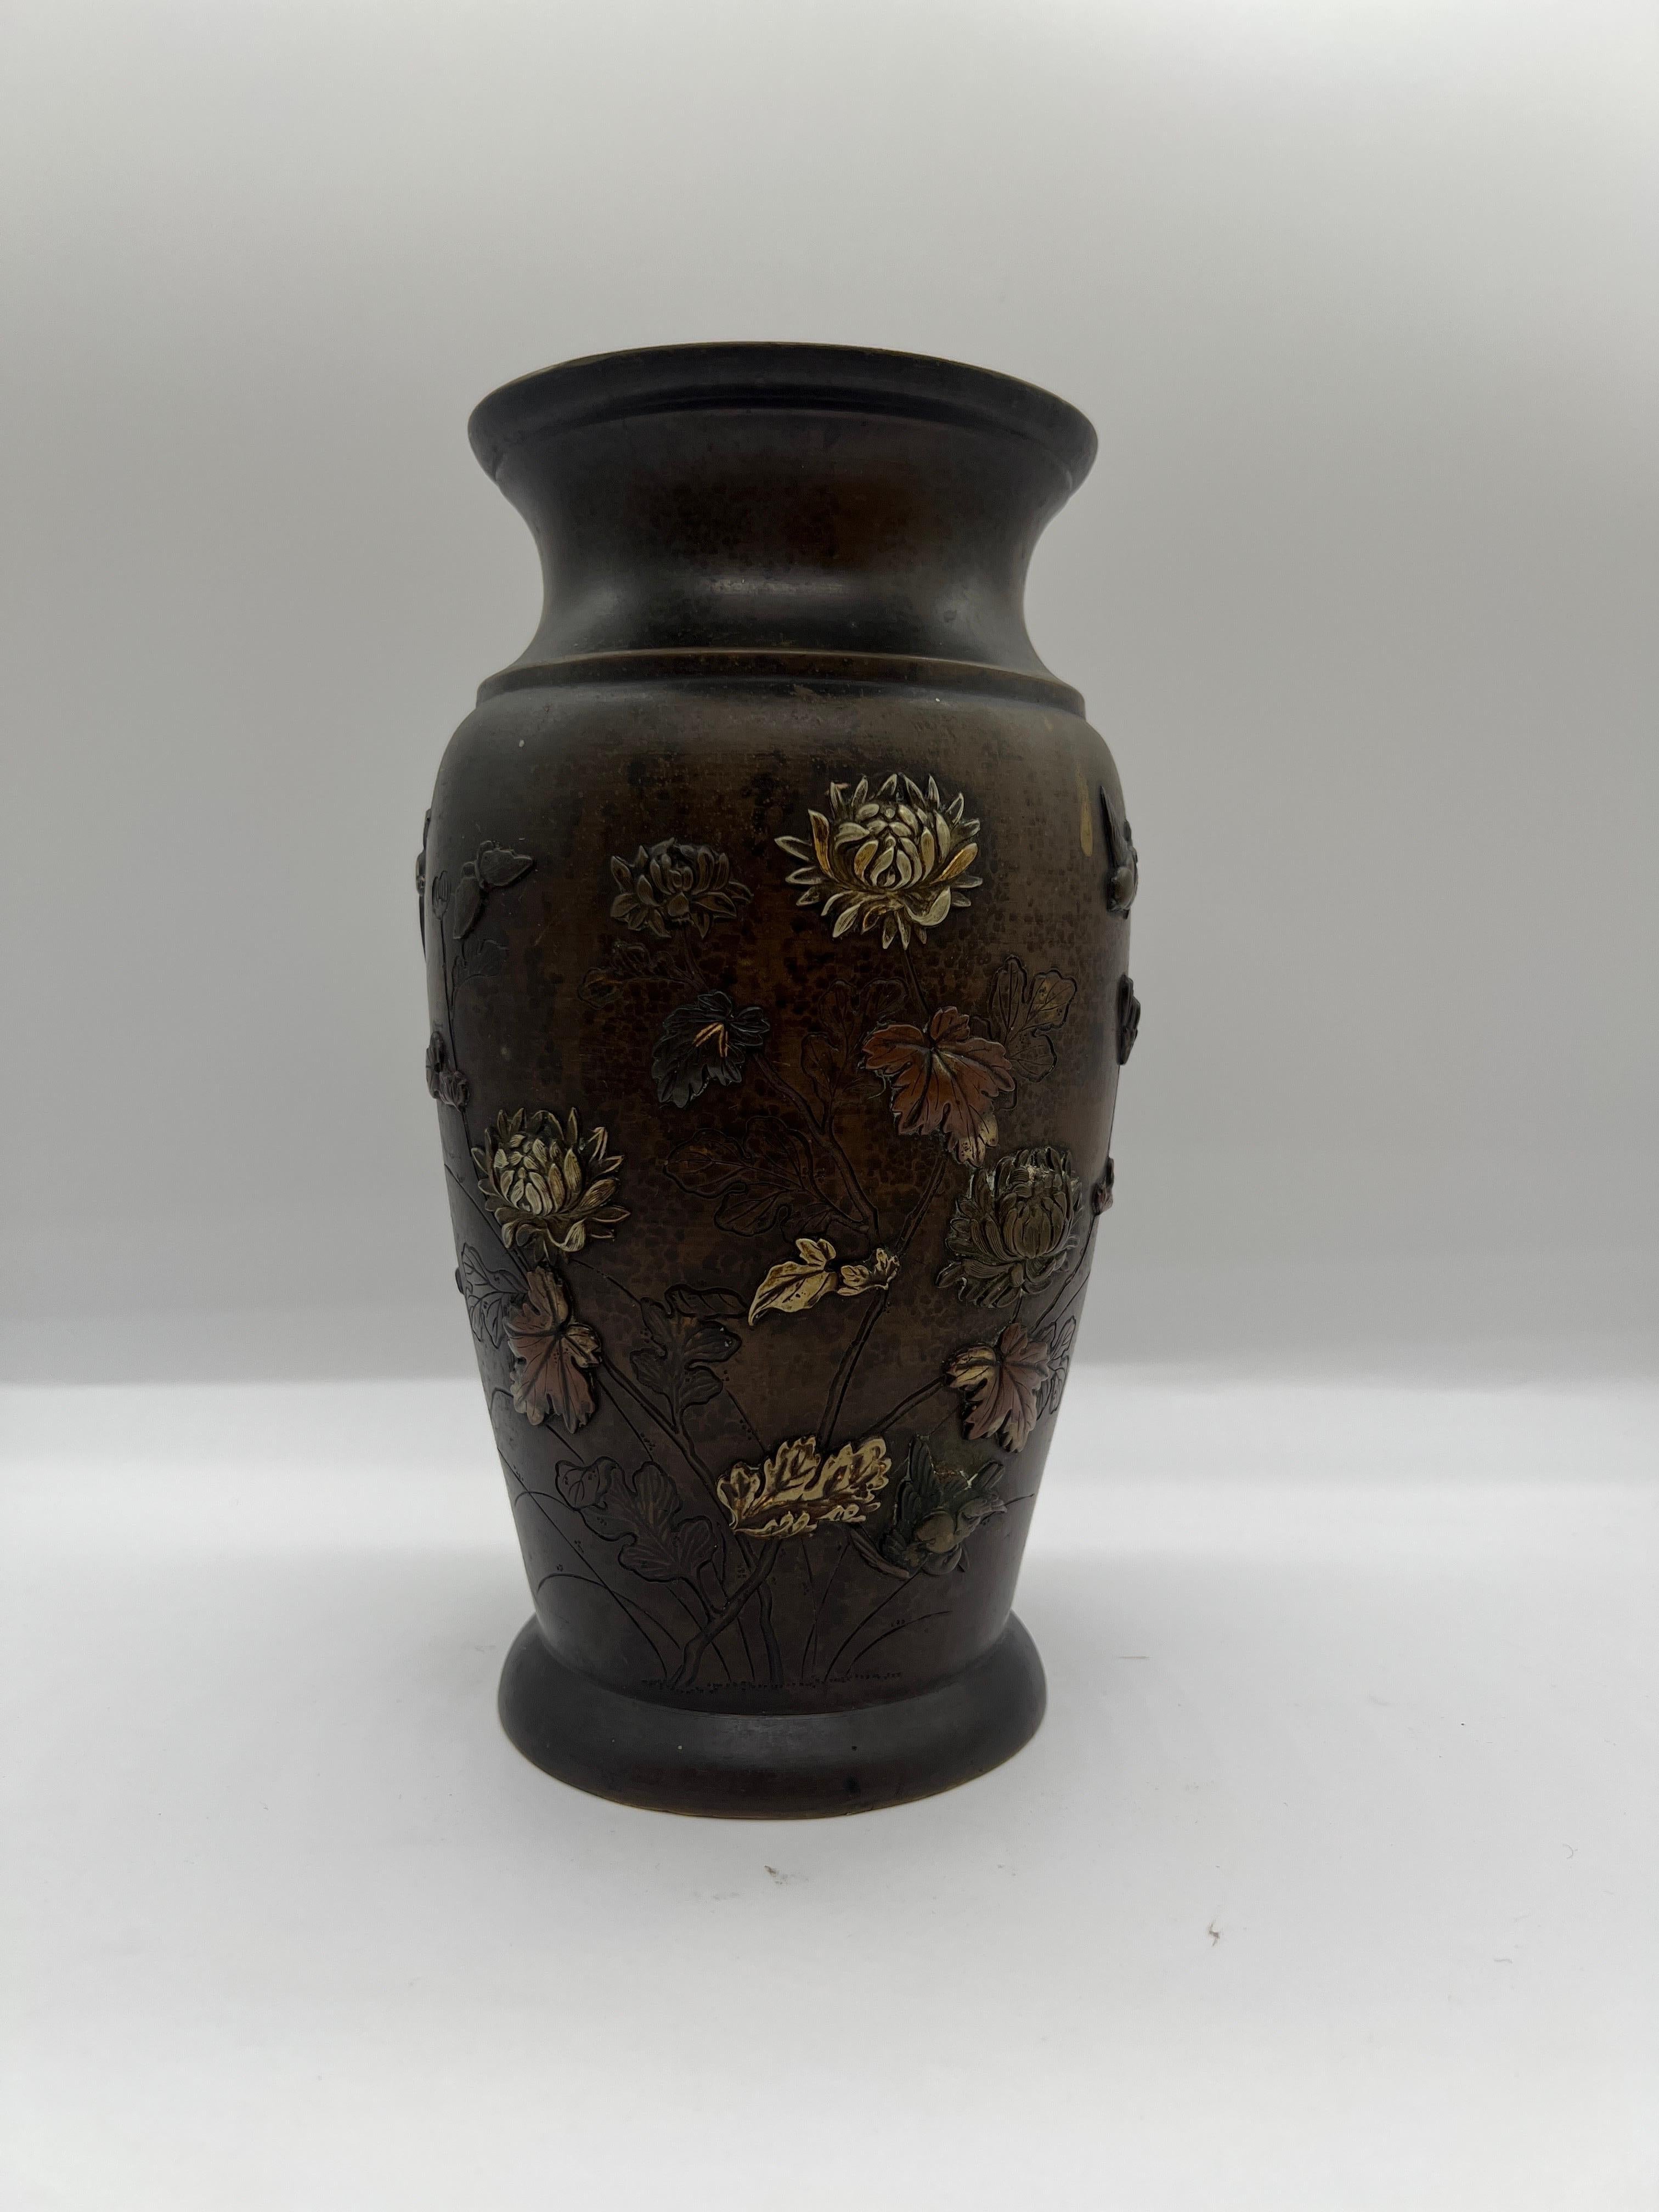 Japanisch, Meiji-Periode.

Eine antike Bronzevase aus Bronze. Die Vase zeigt verschiedene traditionelle Motive wie Lotusblüten, Vögel im Flug und andere florale Details. Für diese Vase wurden verschiedene metallische MATERIALIEN verwendet. Unten